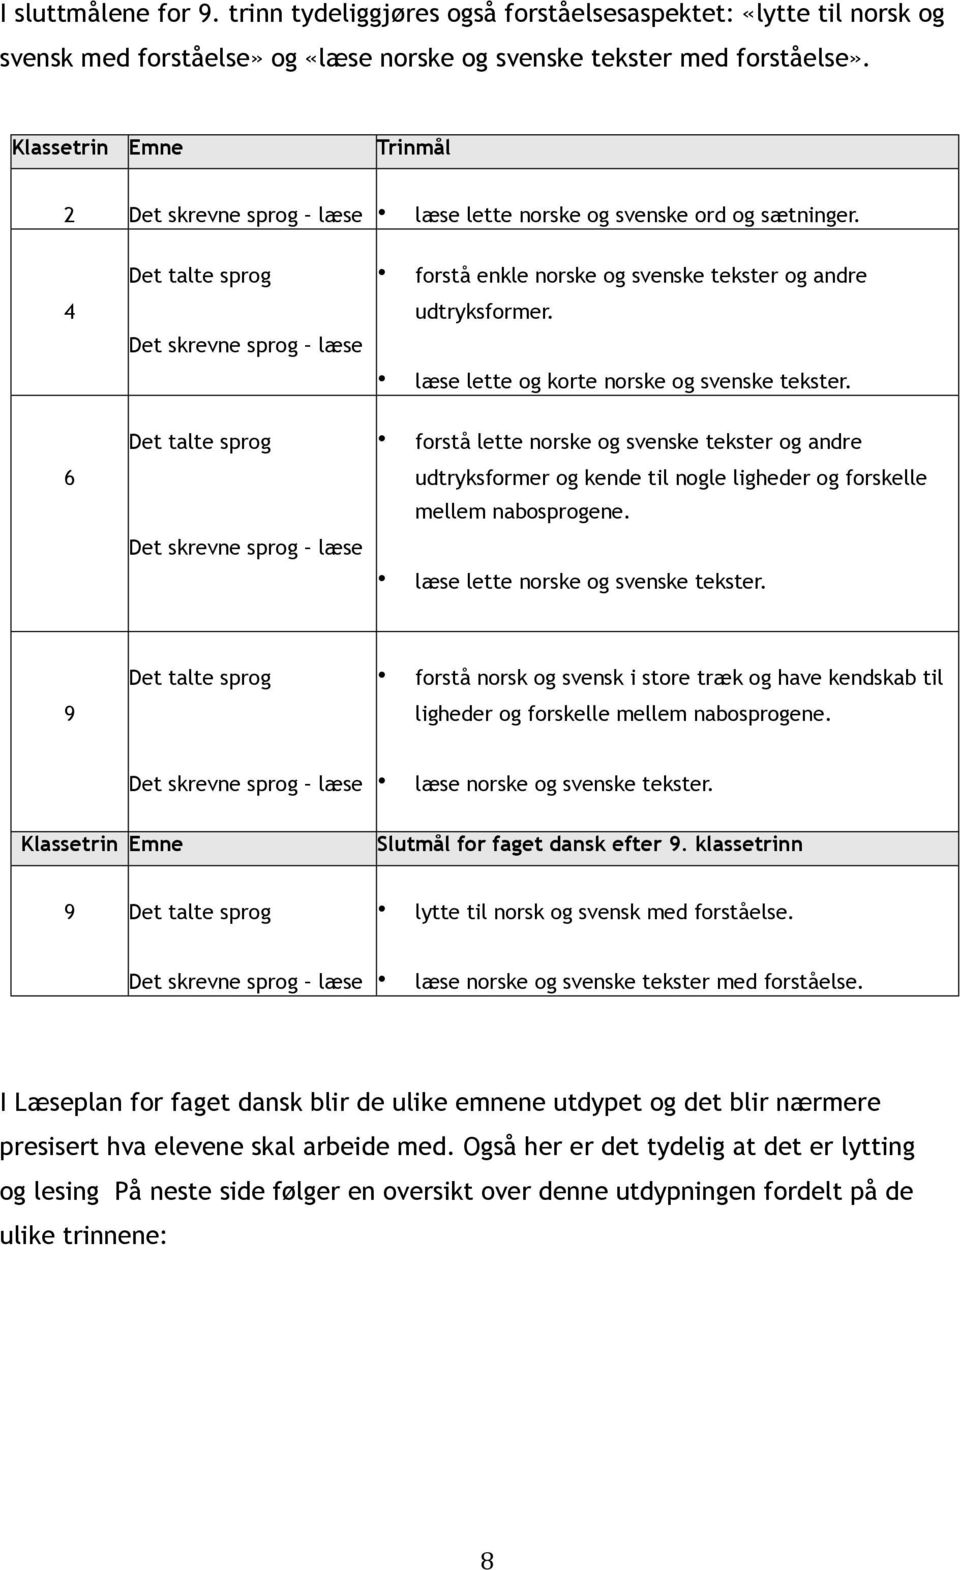 6 Det talte sprog forstå lette norske og svenske tekster og andre udtryksformer og kende til nogle ligheder og forskelle mellem nabosprogene. læse lette norske og svenske tekster.